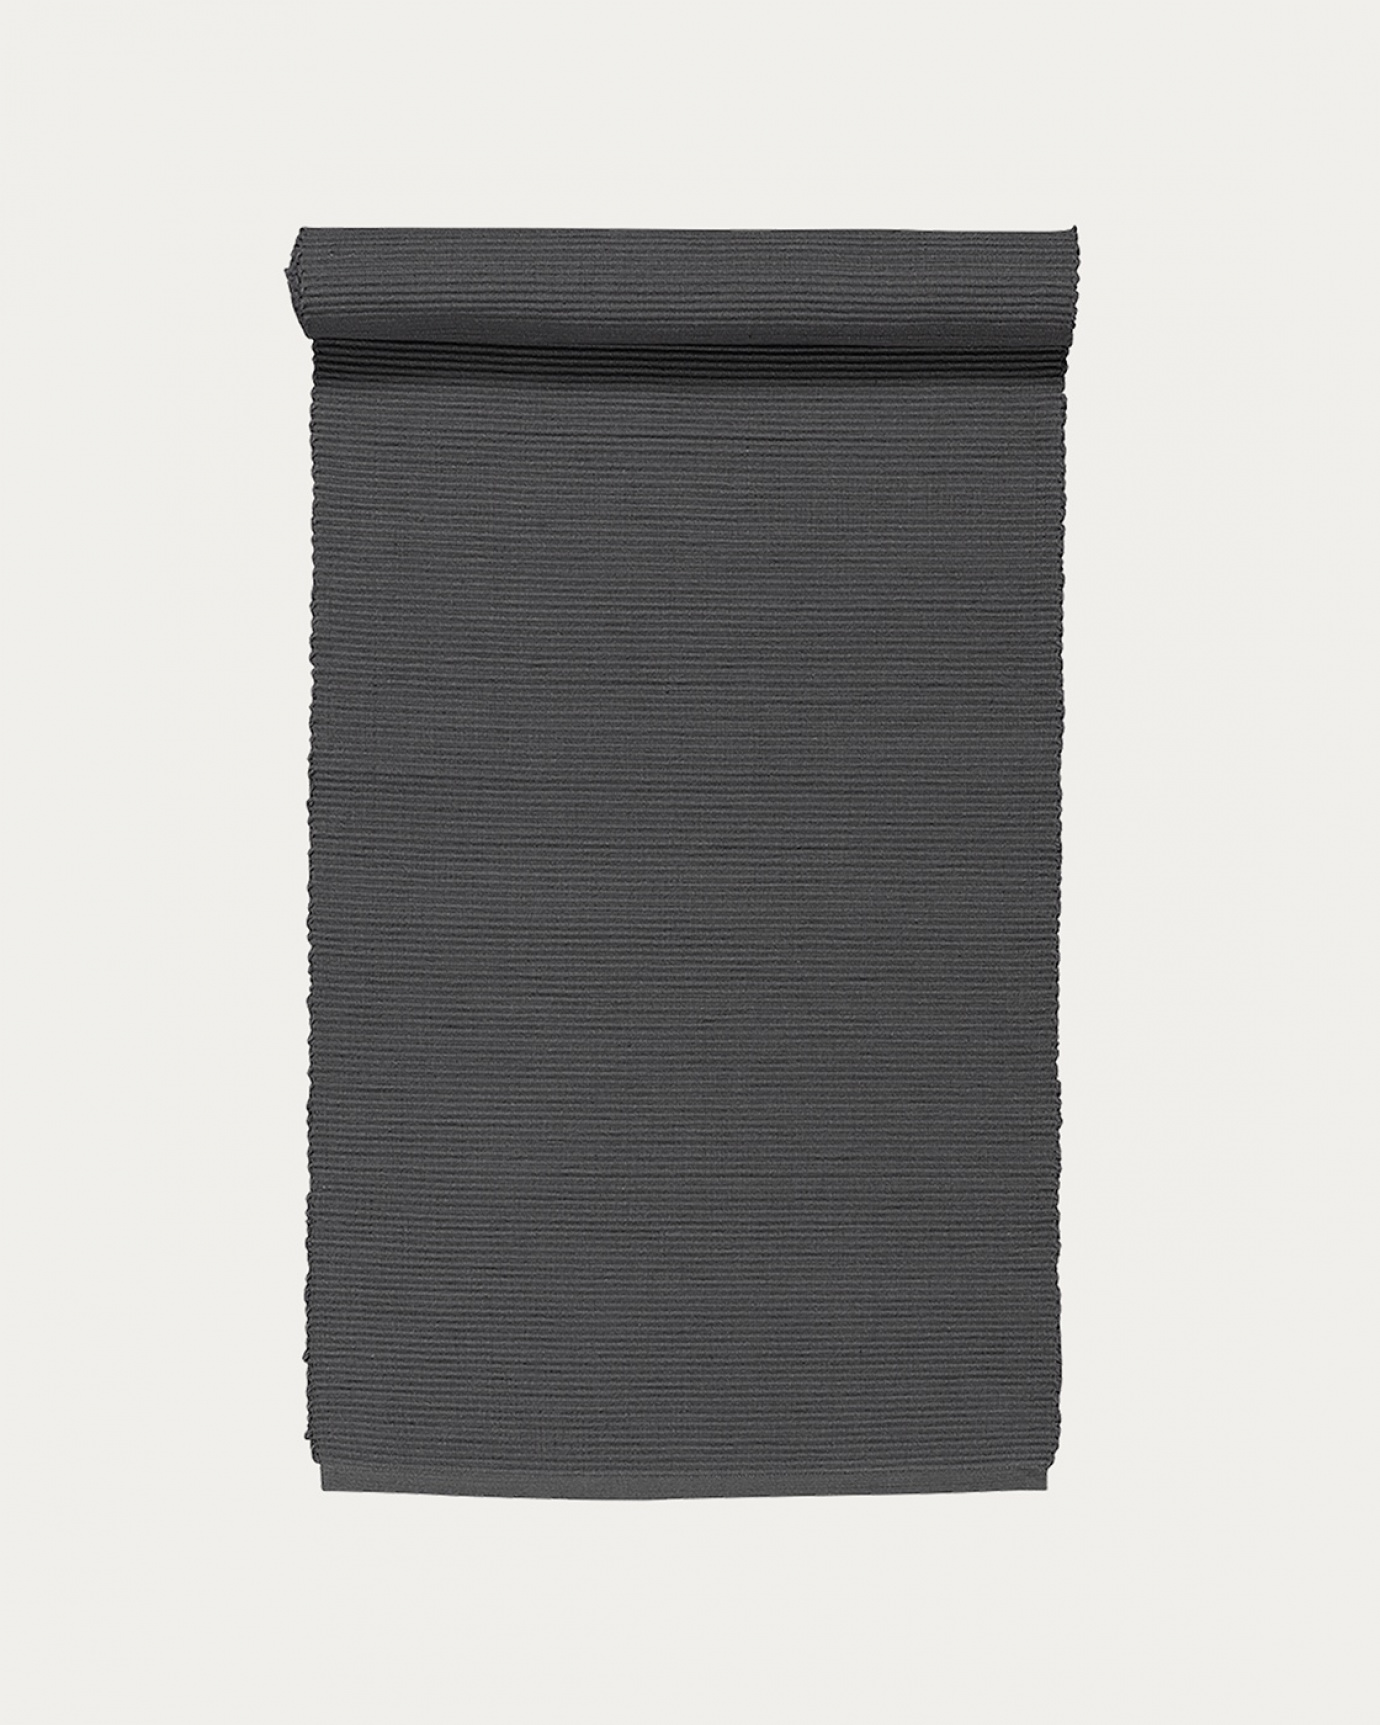 Immagine prodotto grigio granito runner UNI in morbido cotone a costine di qualità di LINUM DESIGN. Dimensioni 45x150 cm.